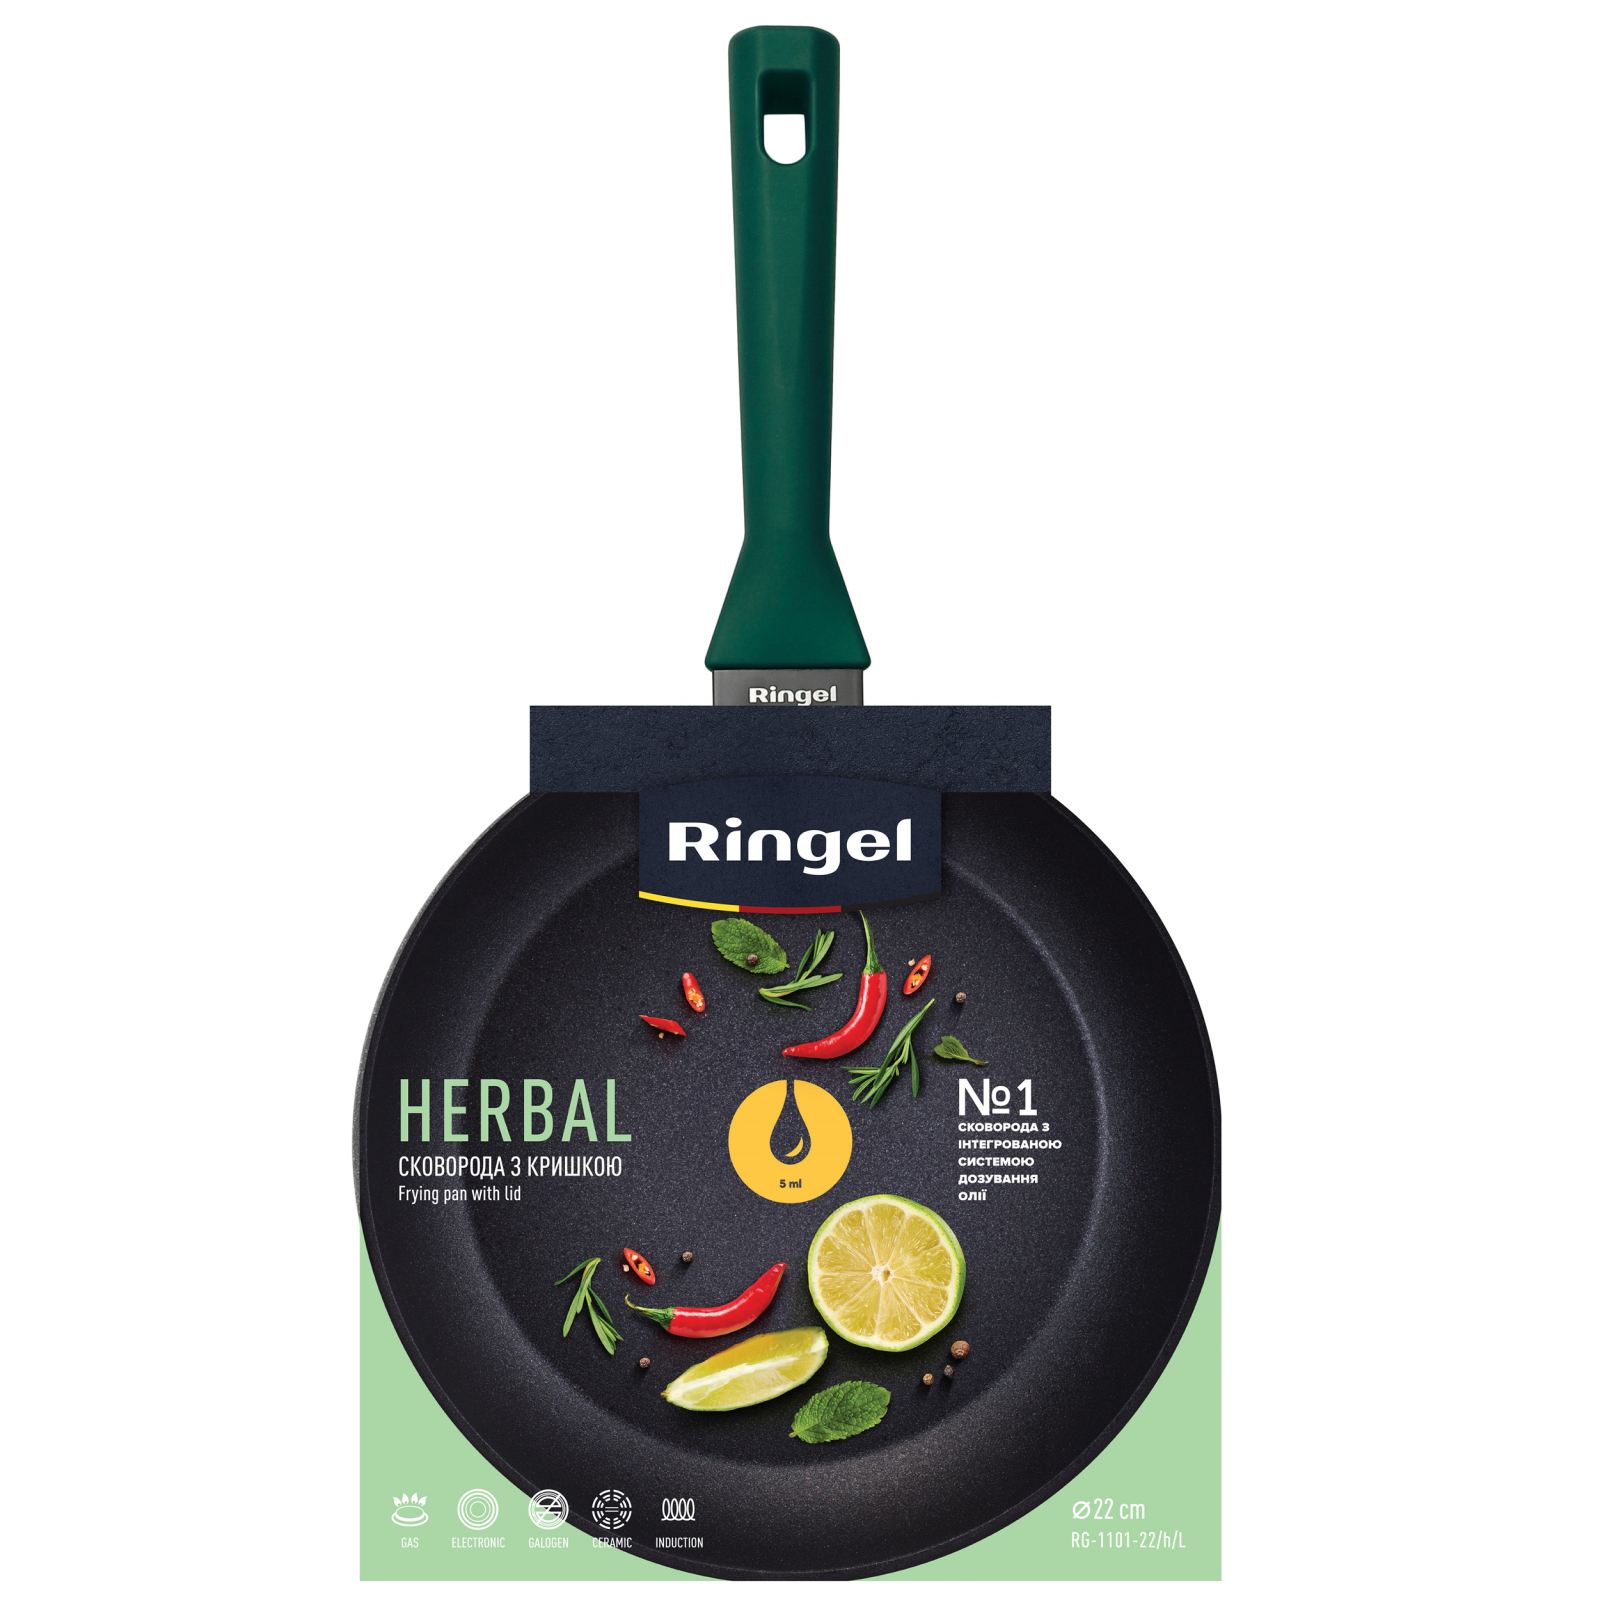 Сковорода Ringel Herbal 26 см (RG-1101-26/h/L) зображення 5